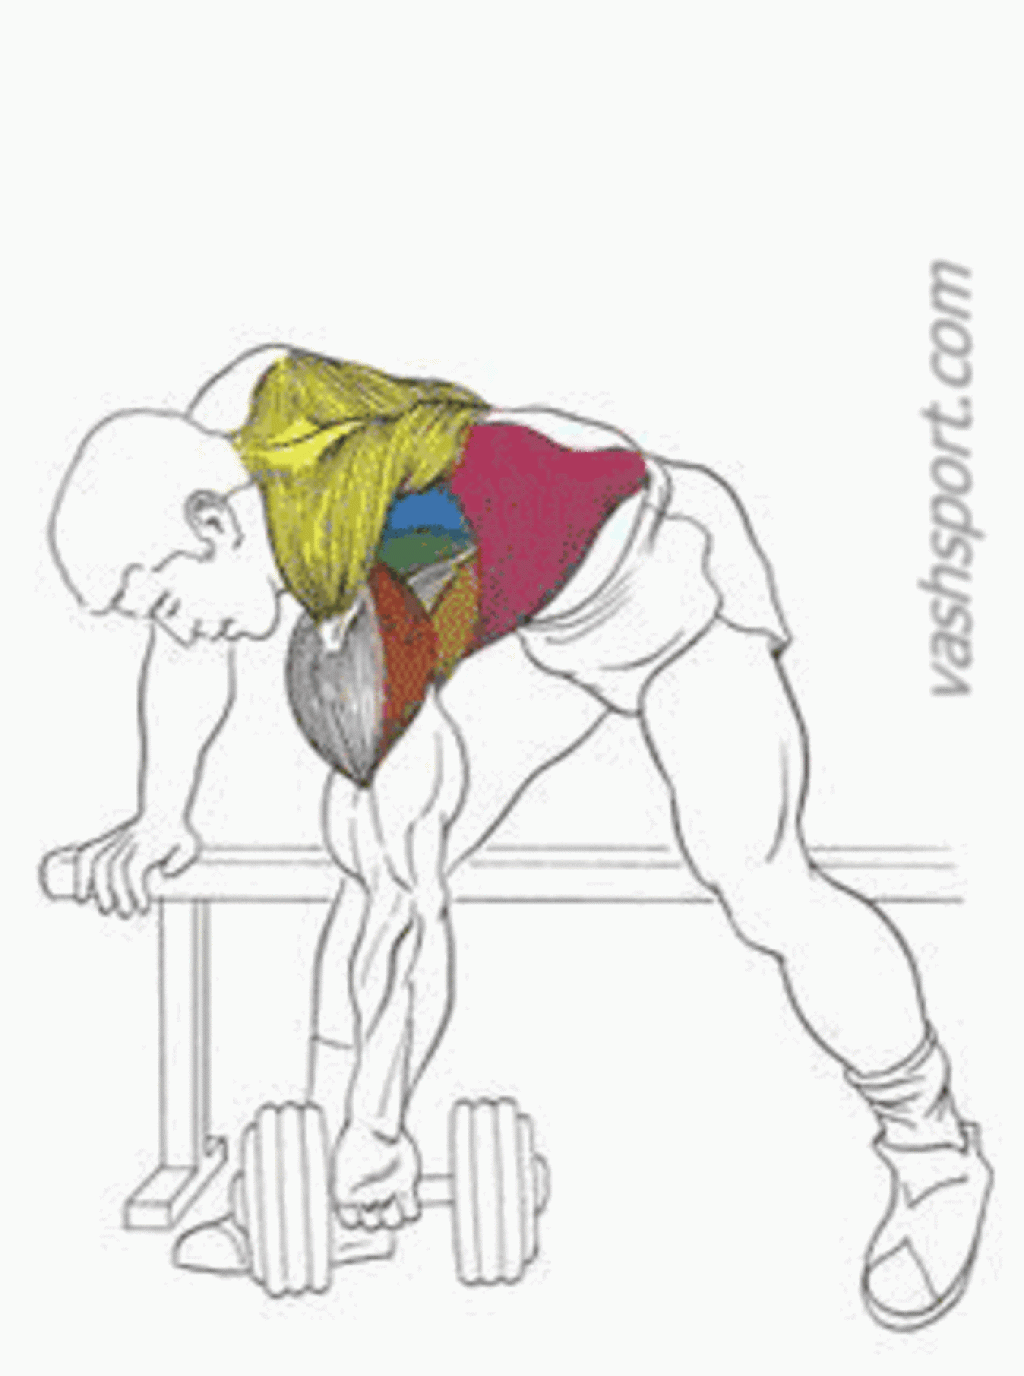 Как тренировать мышцы спины с помощью гантелей